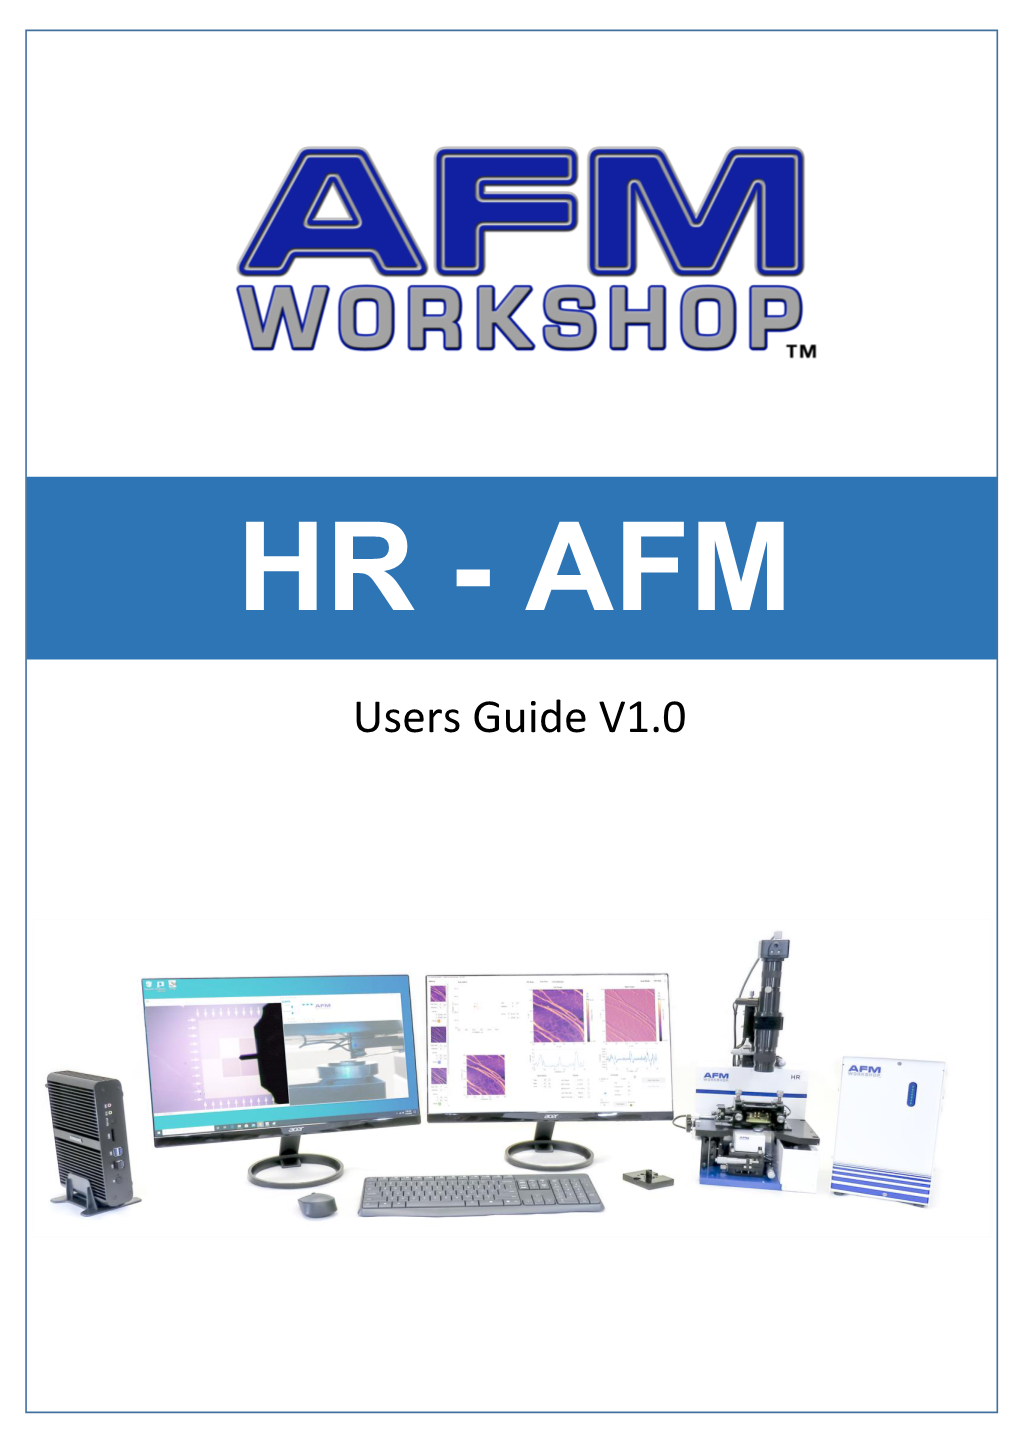 HR-AFM Manual